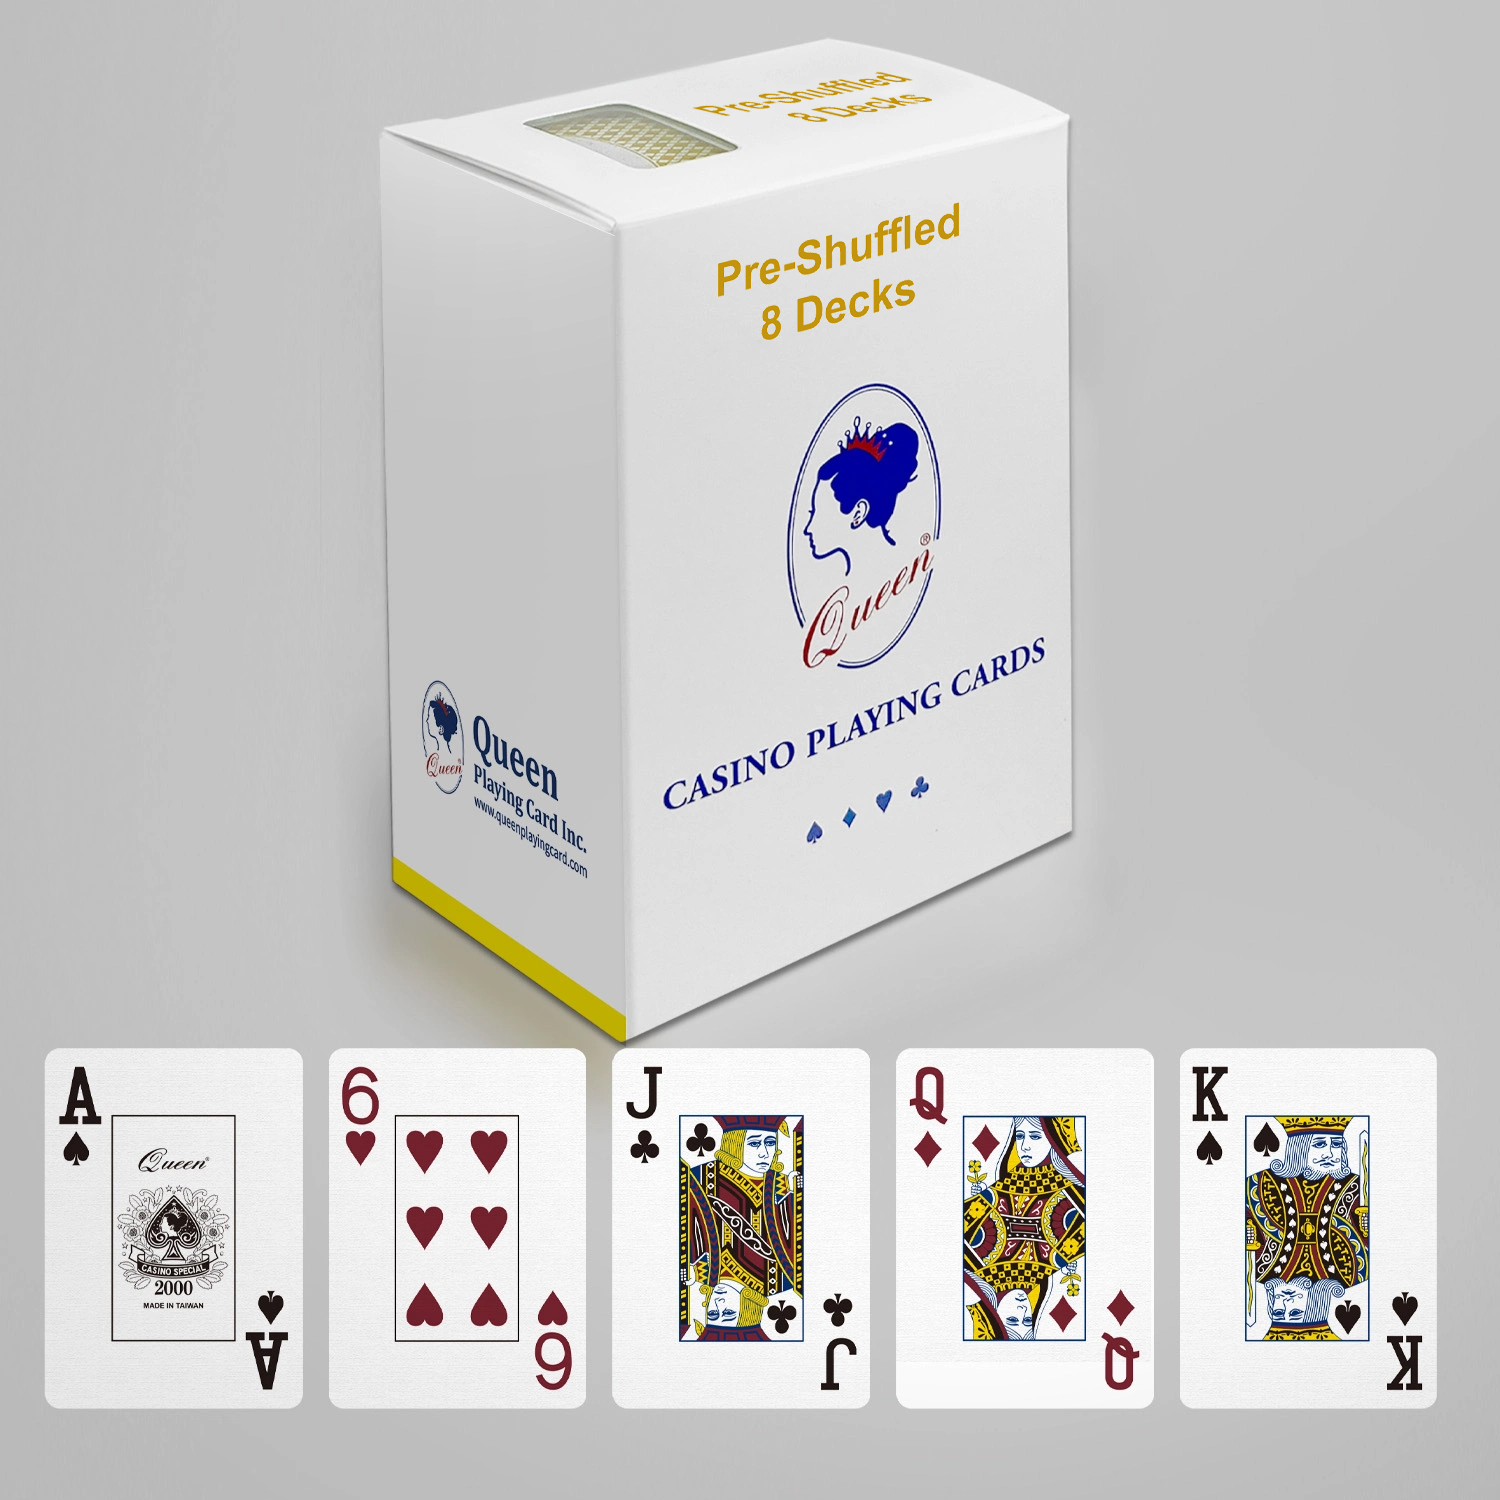 プロフェッショナル カード ルーム ペーパー トランプ ポーカー サイズ - 標準インデックス - 8 デッキ セット シャッフル済み